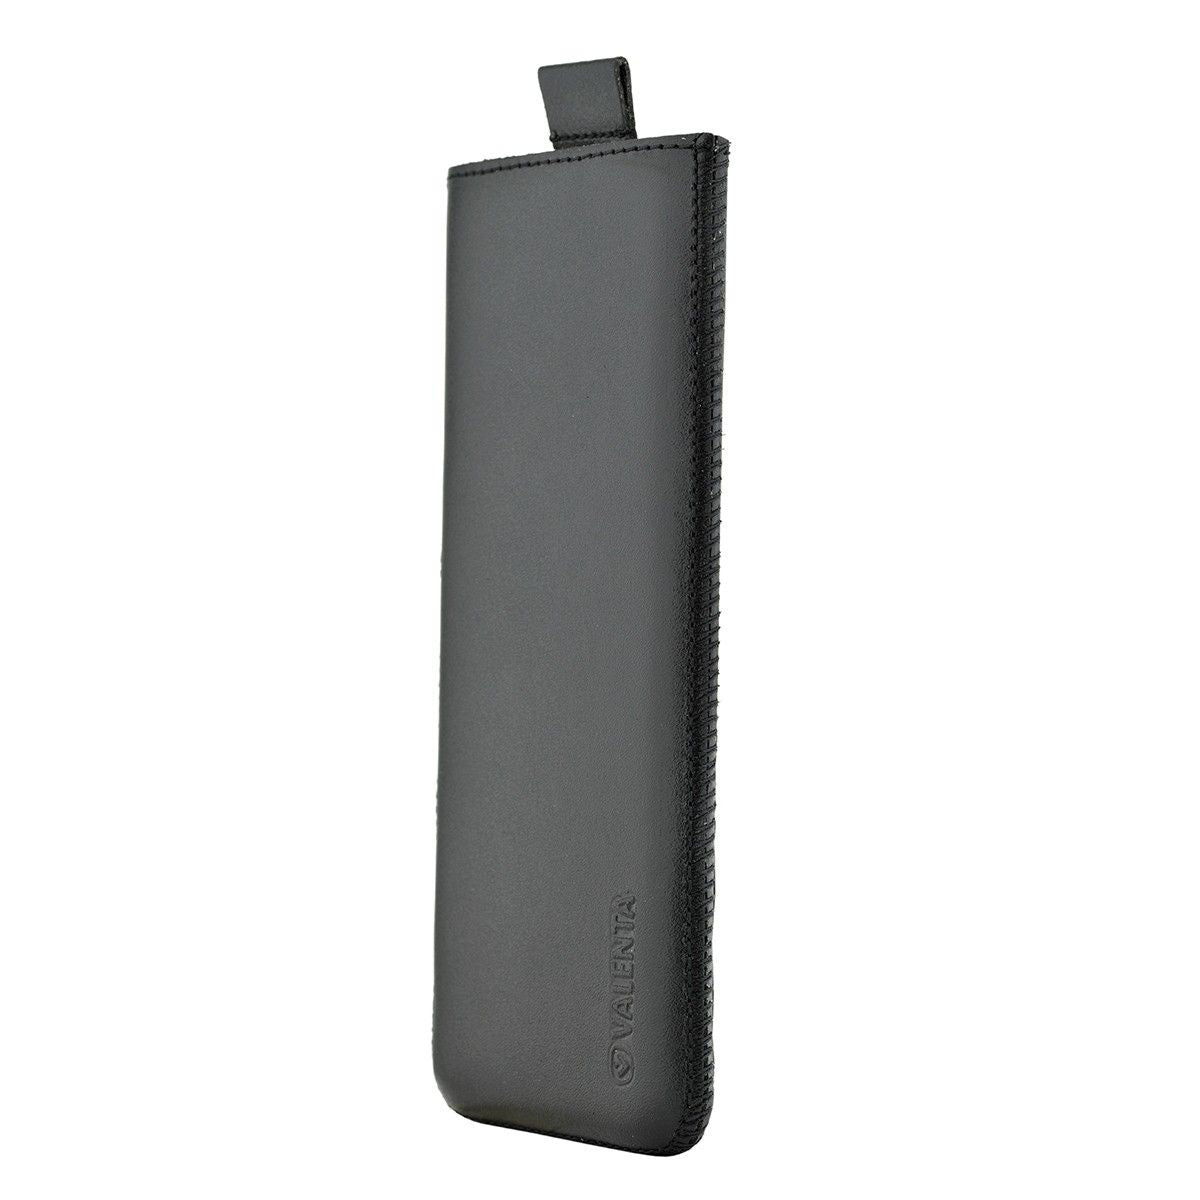  Einschubhülle Pocket Classic Schwarz 44 - iPhone 11 / XR - H155 x B76 x D10